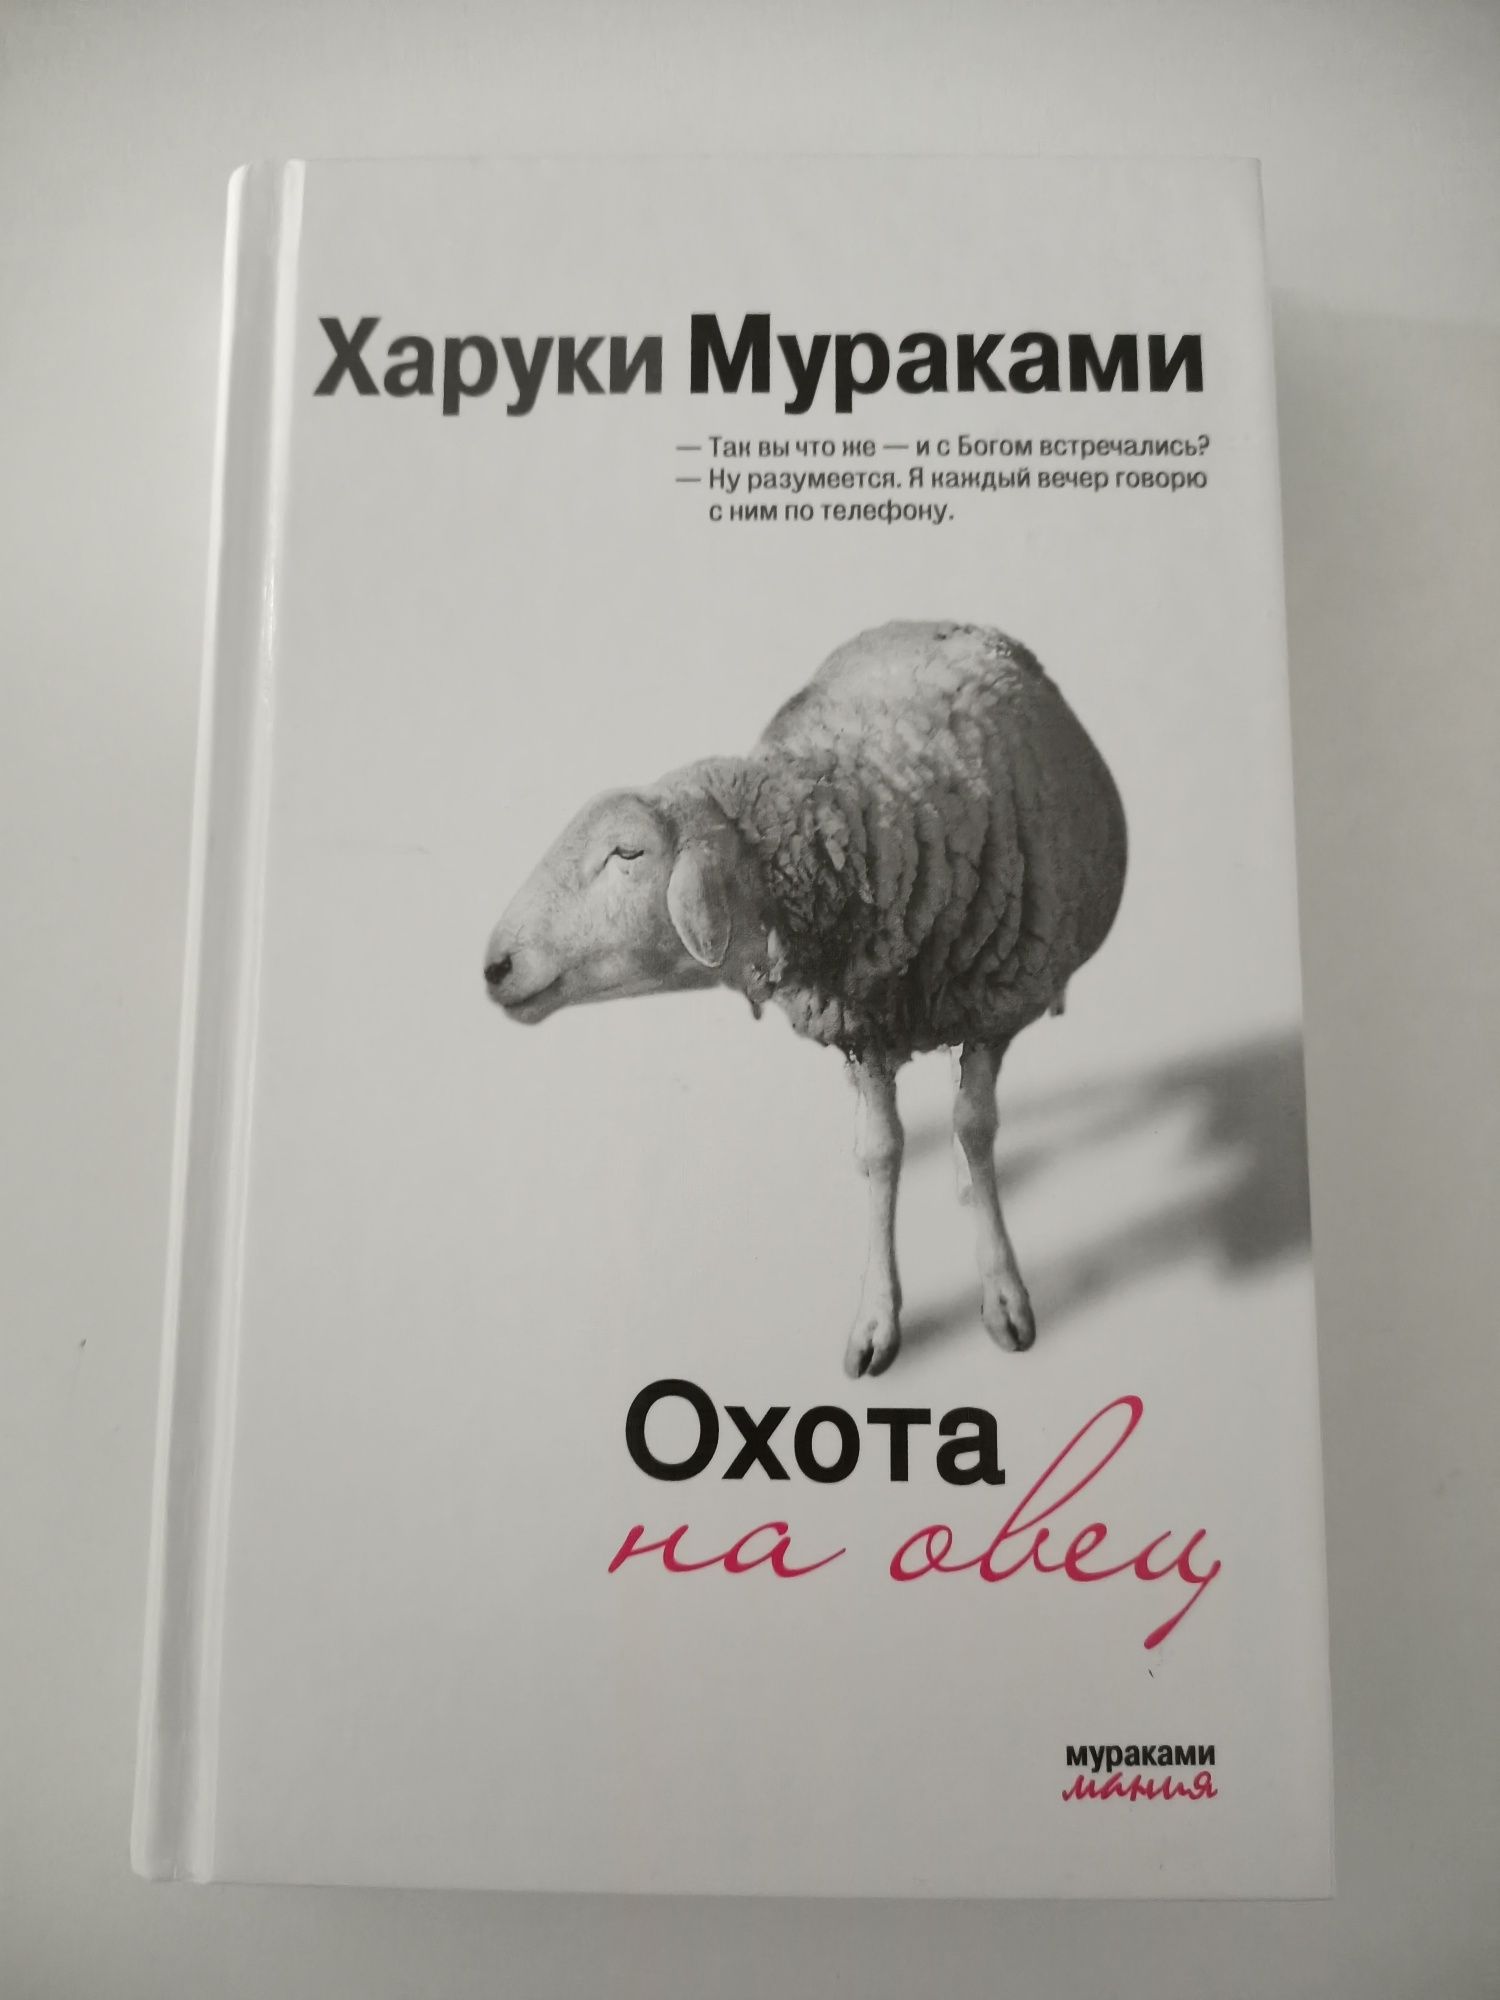 Книга "Охота на овец"